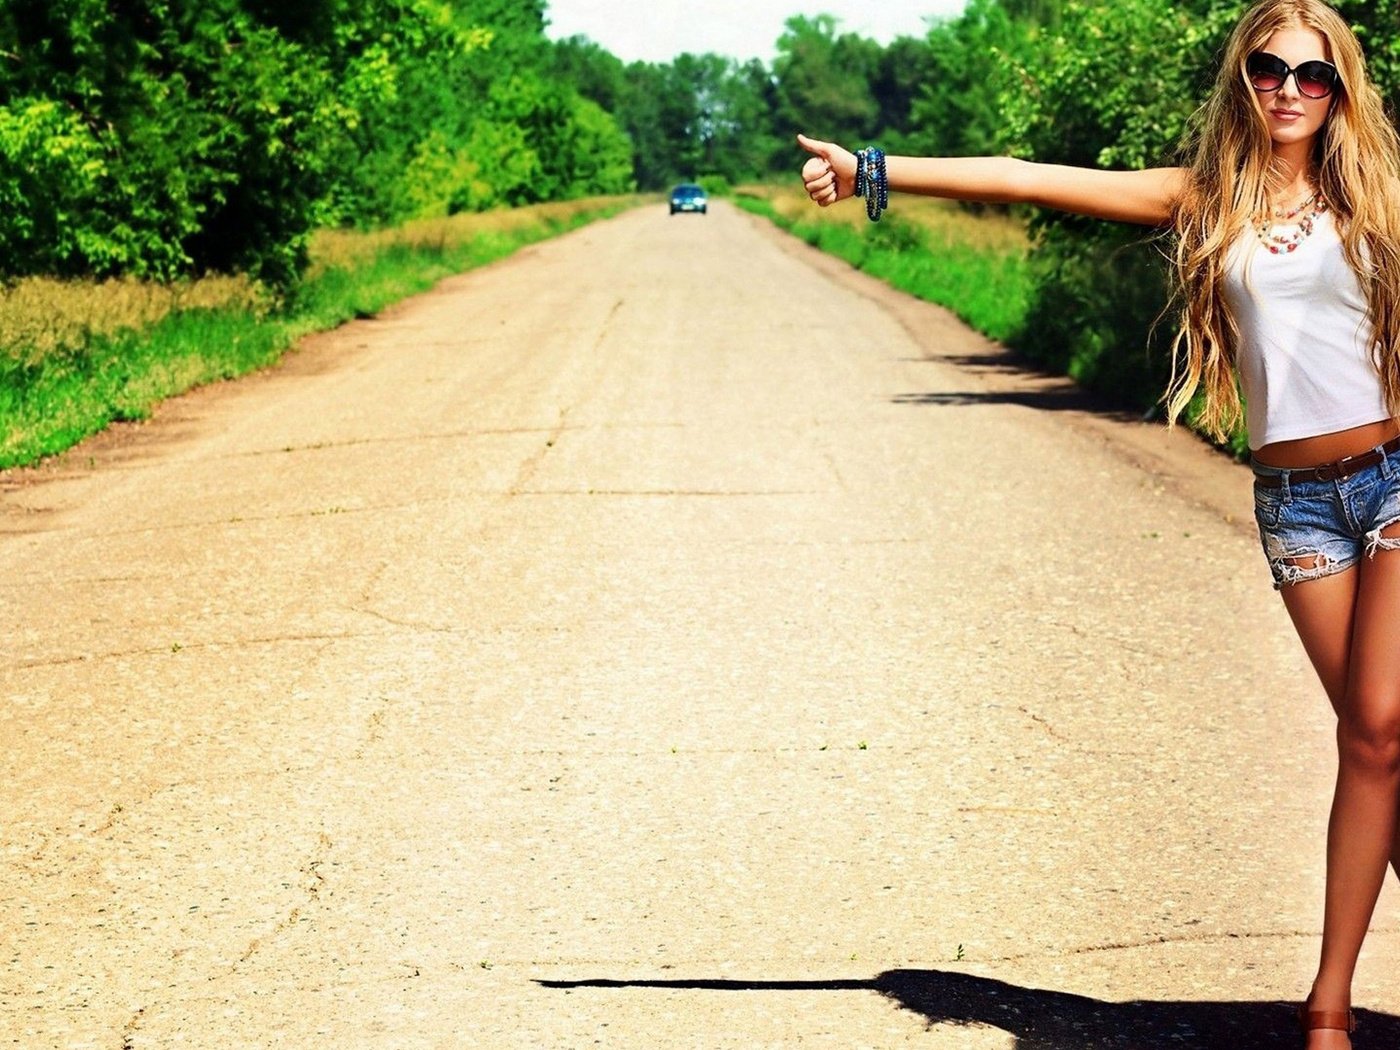 Где найти телку. Девушка автостоп. Голосует на трассе. Девки у дороги. Фотосессия девушки на трассе летом.